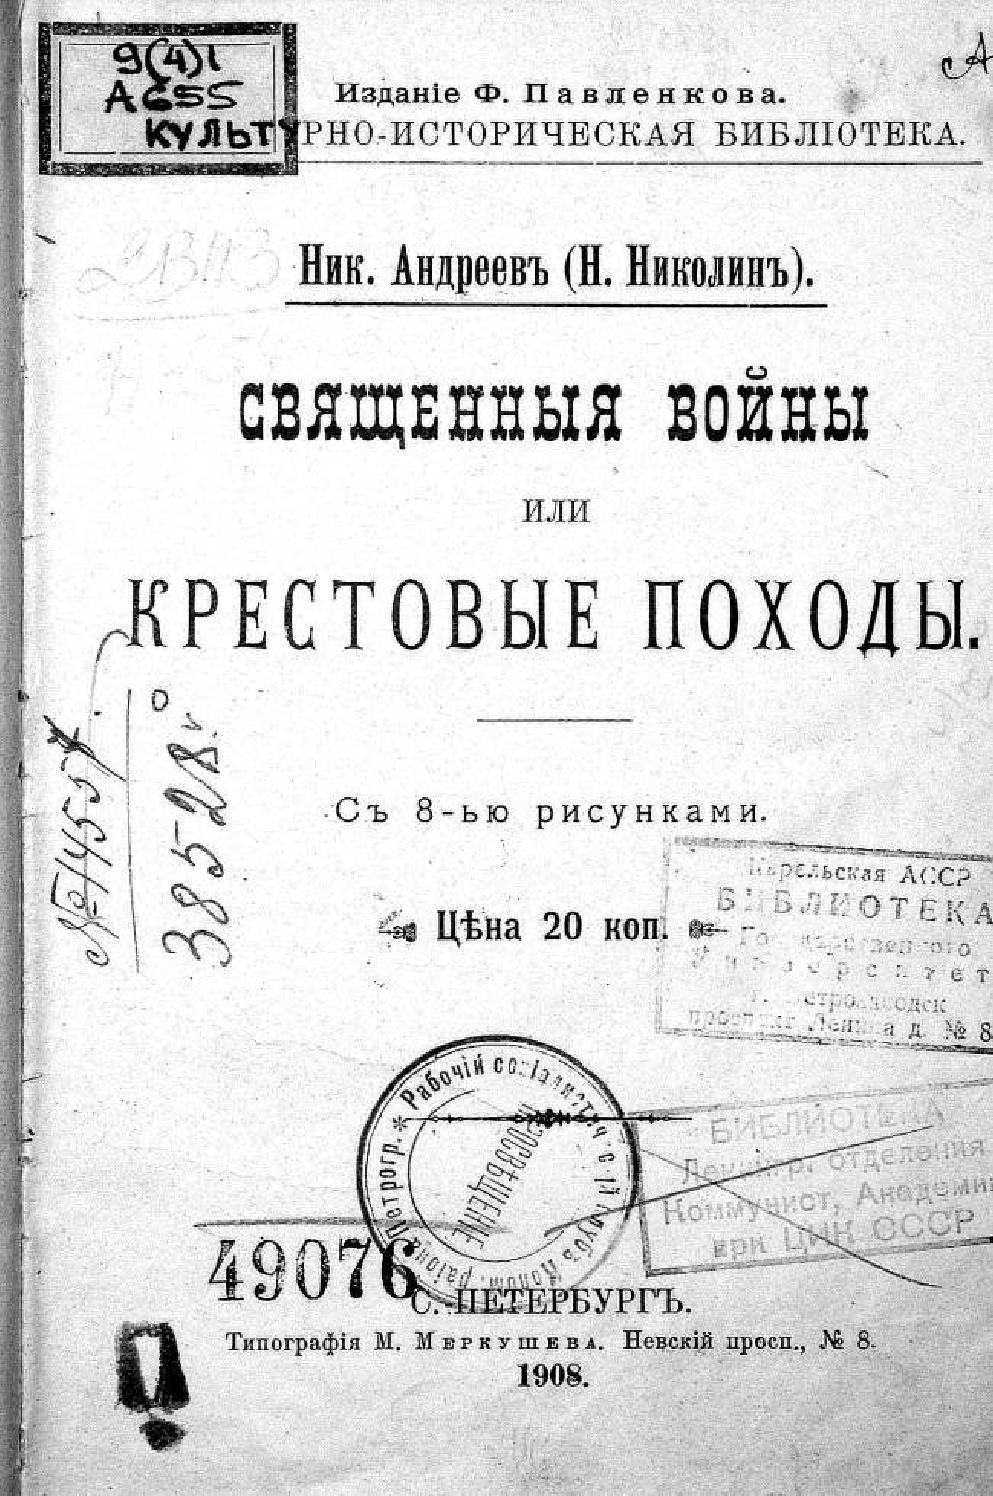 Священныя войны или Крестовые походы, 1908, Ник. Андреев (Н.Николин)